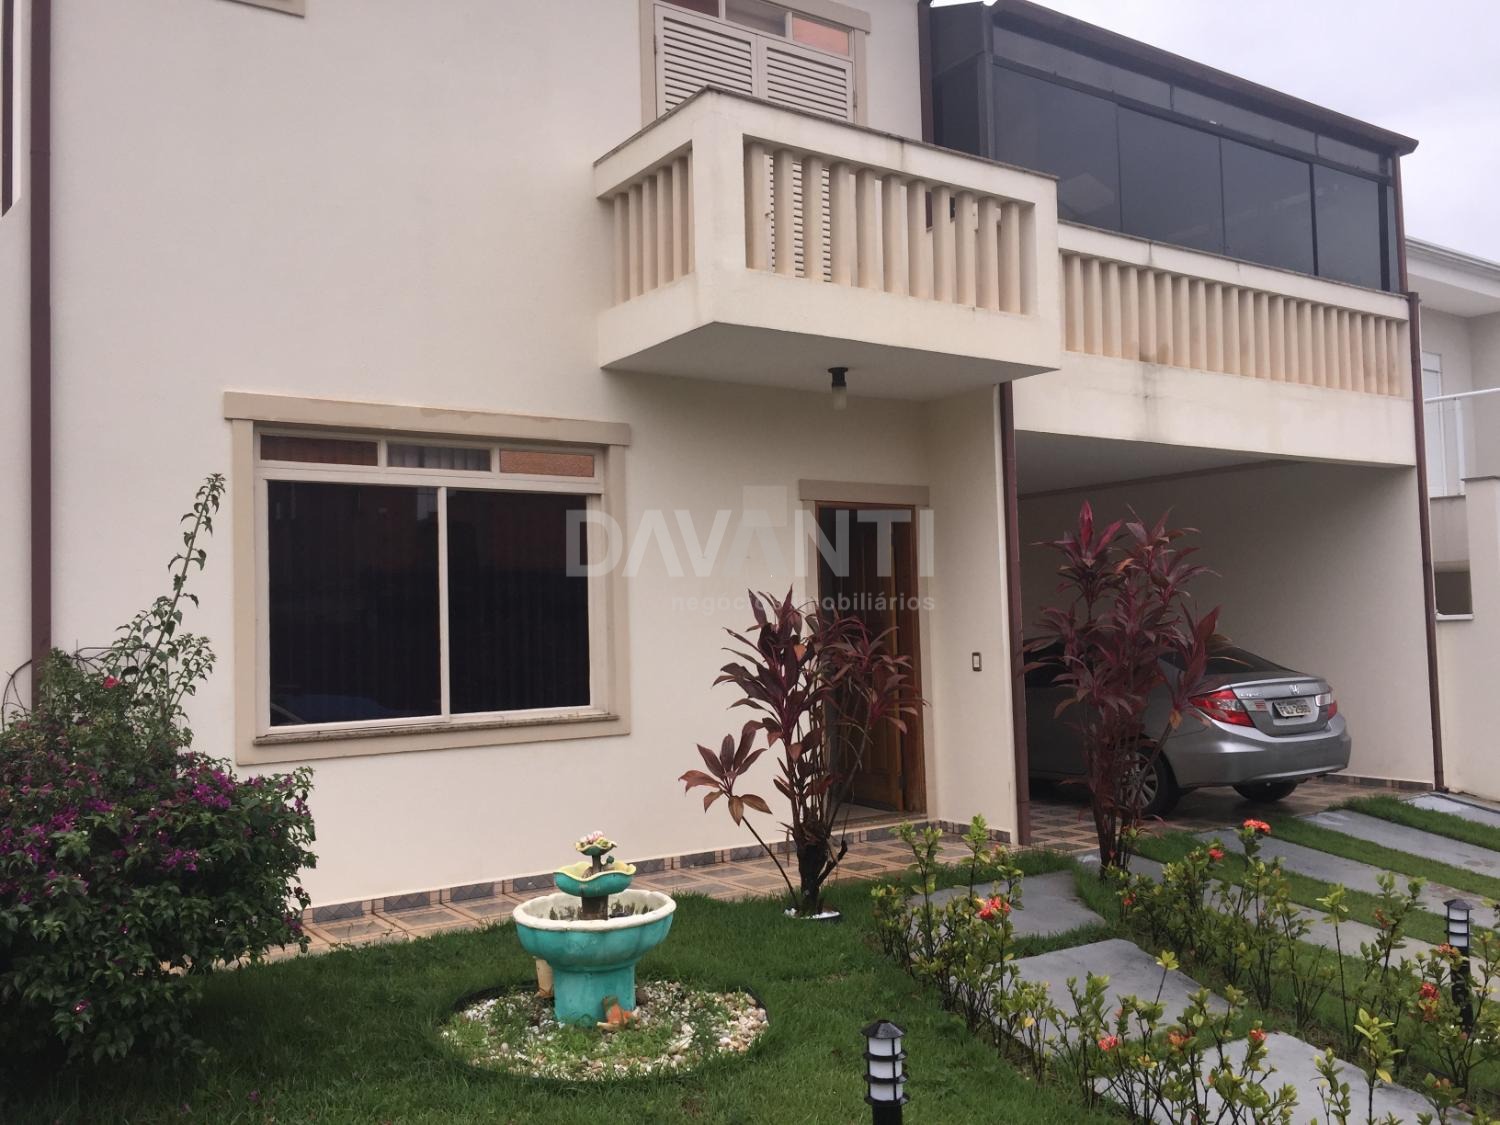 CA000925 | Casa venda Condomínio Residencial Canterville Residence | Valinhos/SP